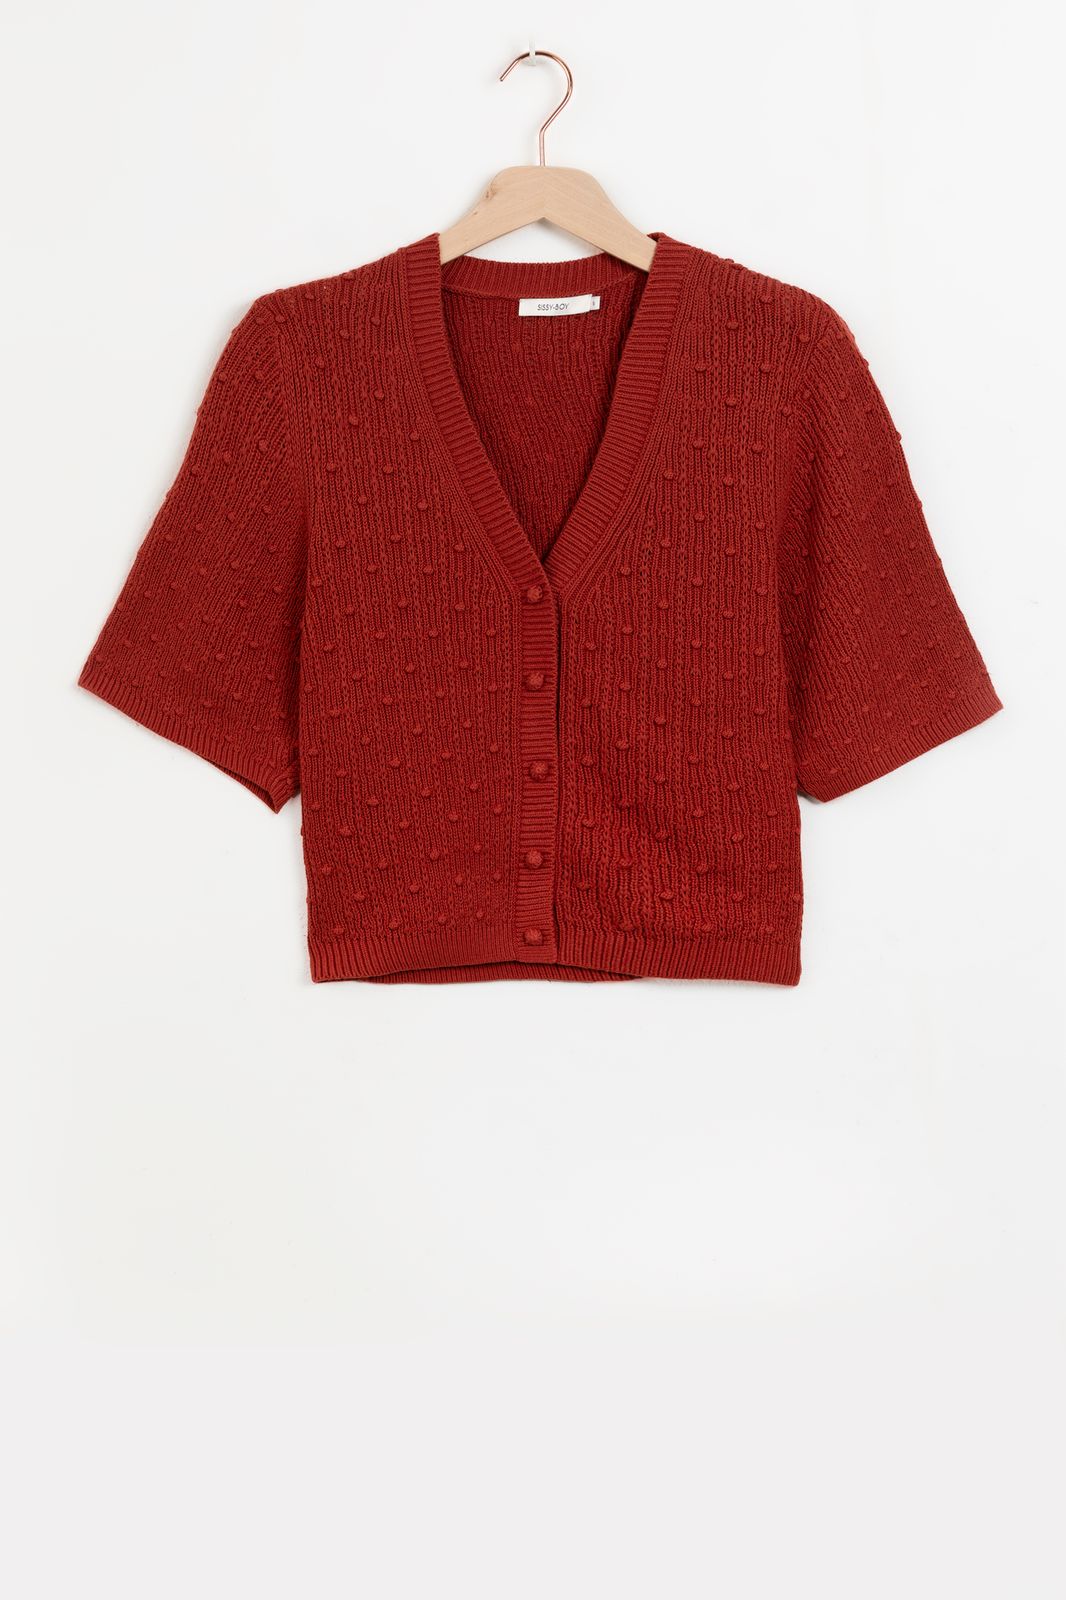 Gilet tricoté à manches courtes - rouge foncé